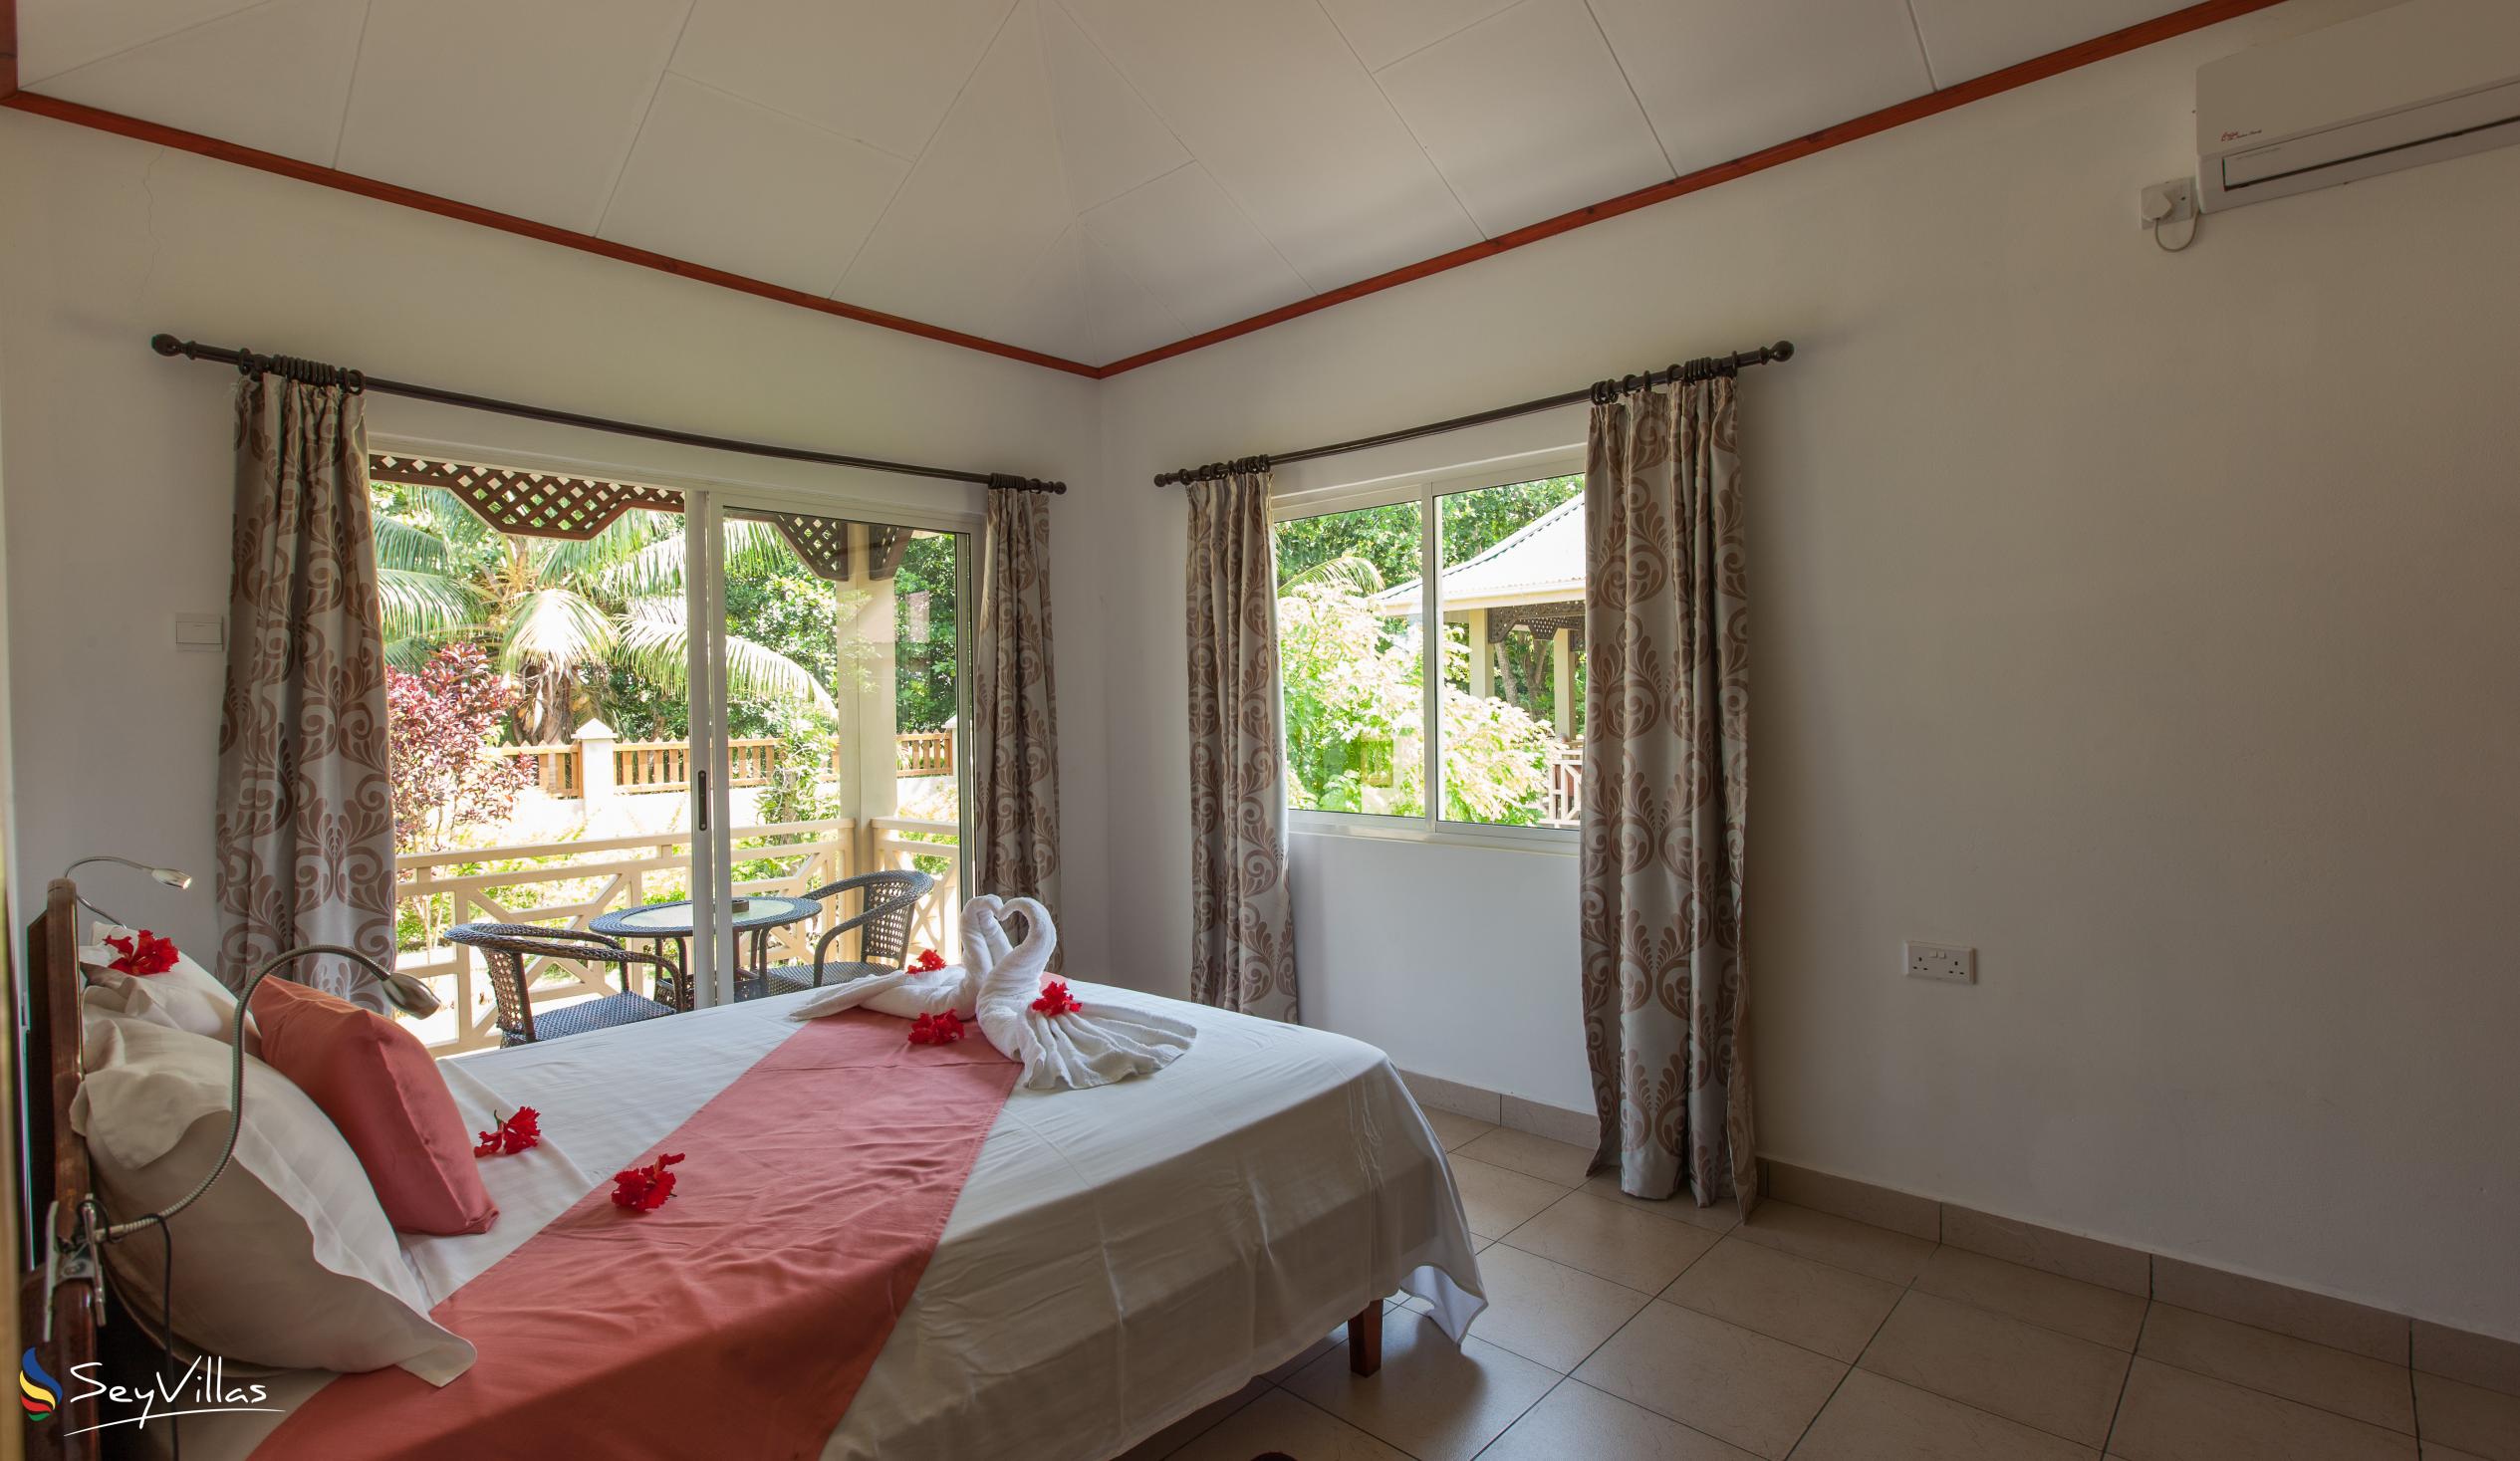 Foto 46: Hostellerie La Digue - Chalet 2 chambres - La Digue (Seychelles)